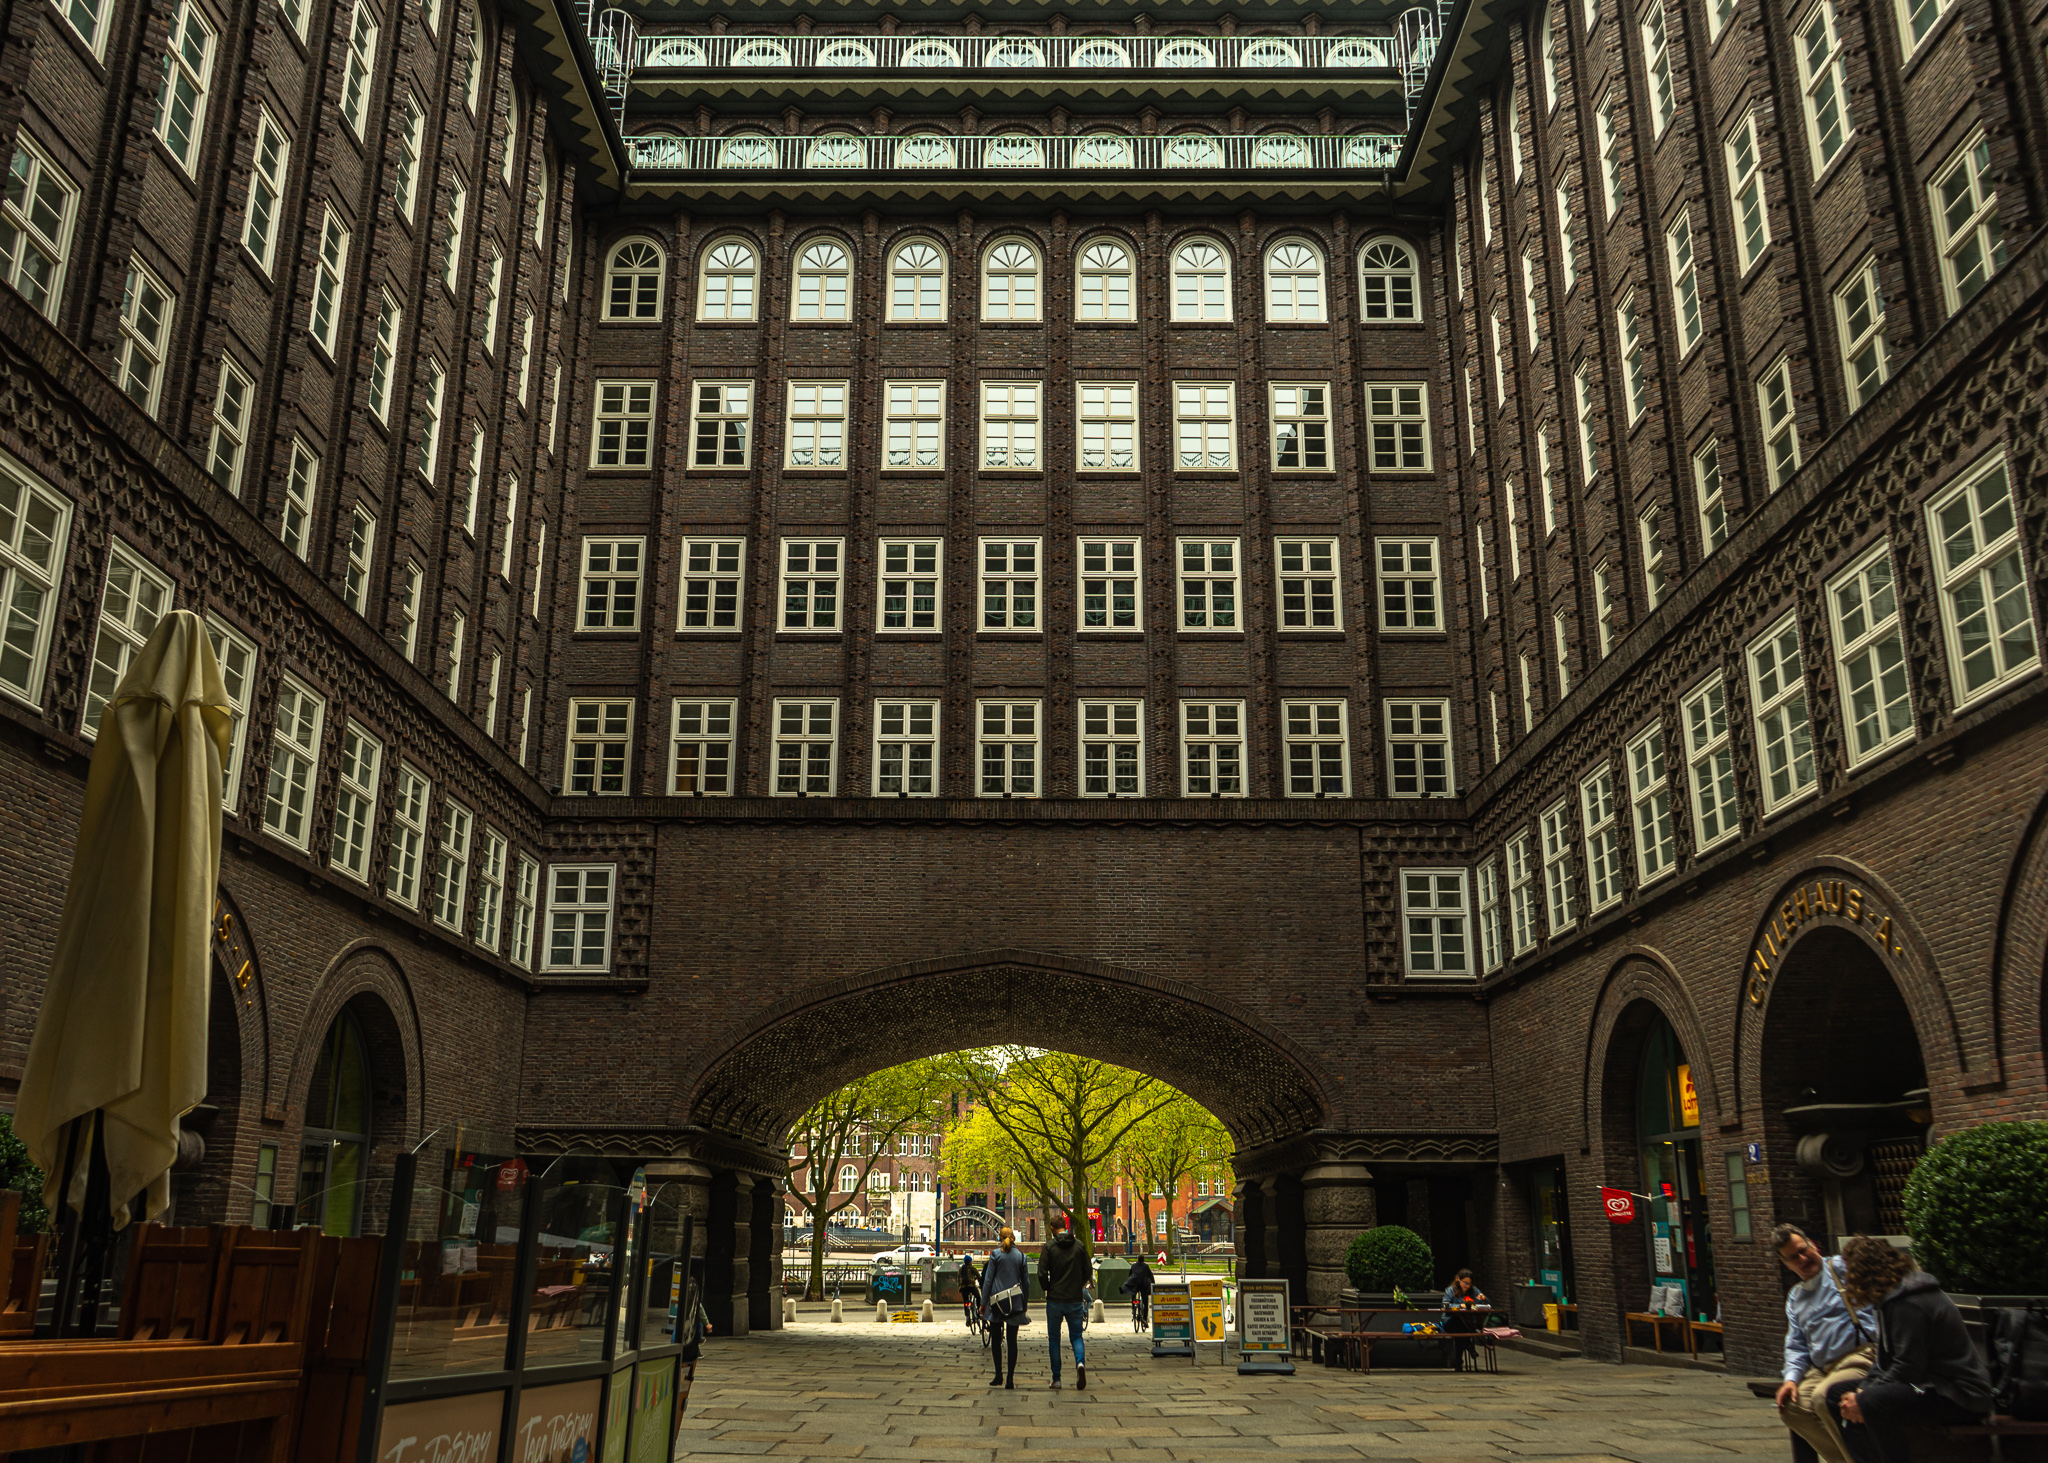 The Chilehaus in Hamburg